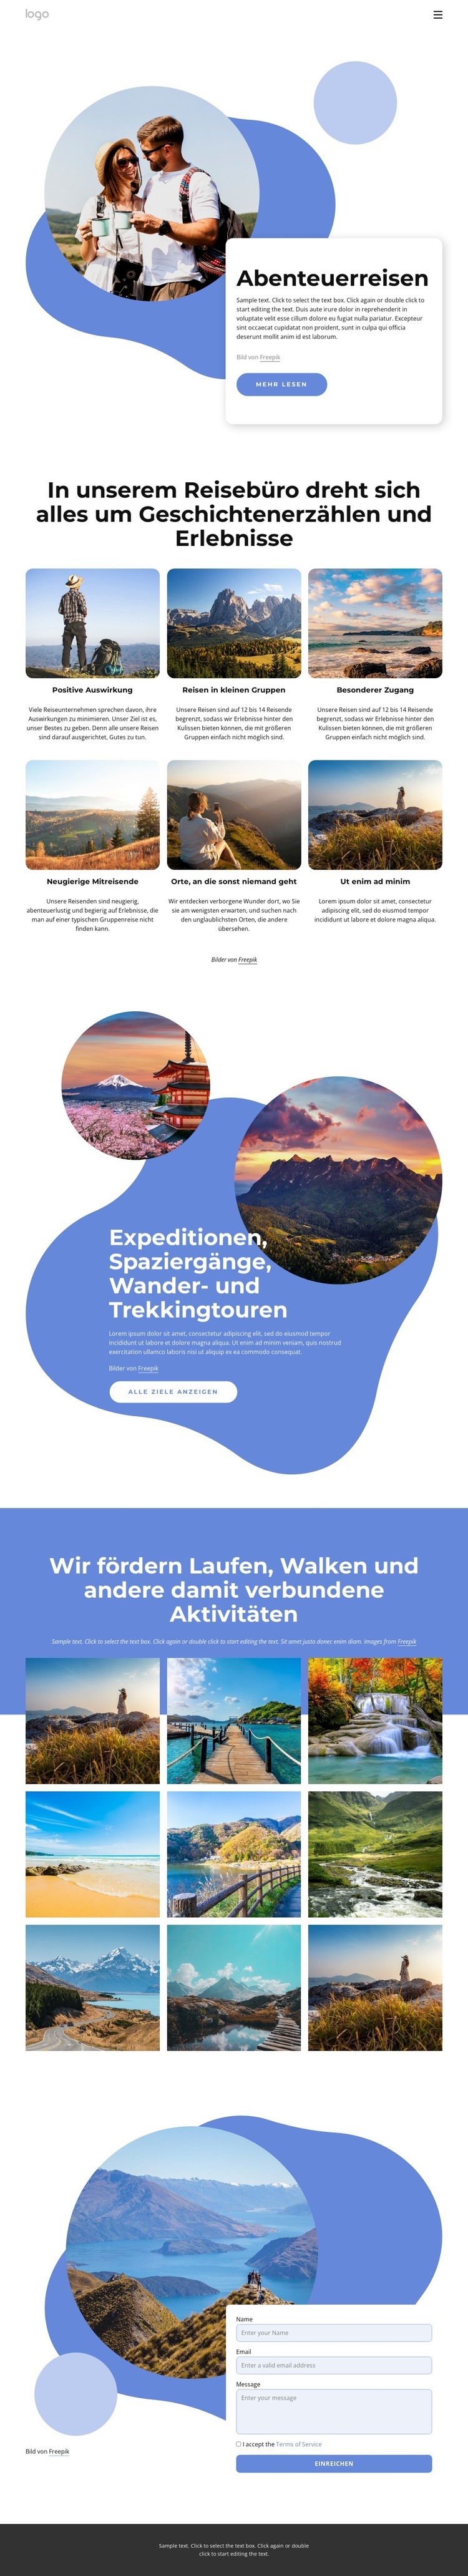 Agentur, die sich auf Luxus-Abenteuerreisen spezialisiert hat Website design